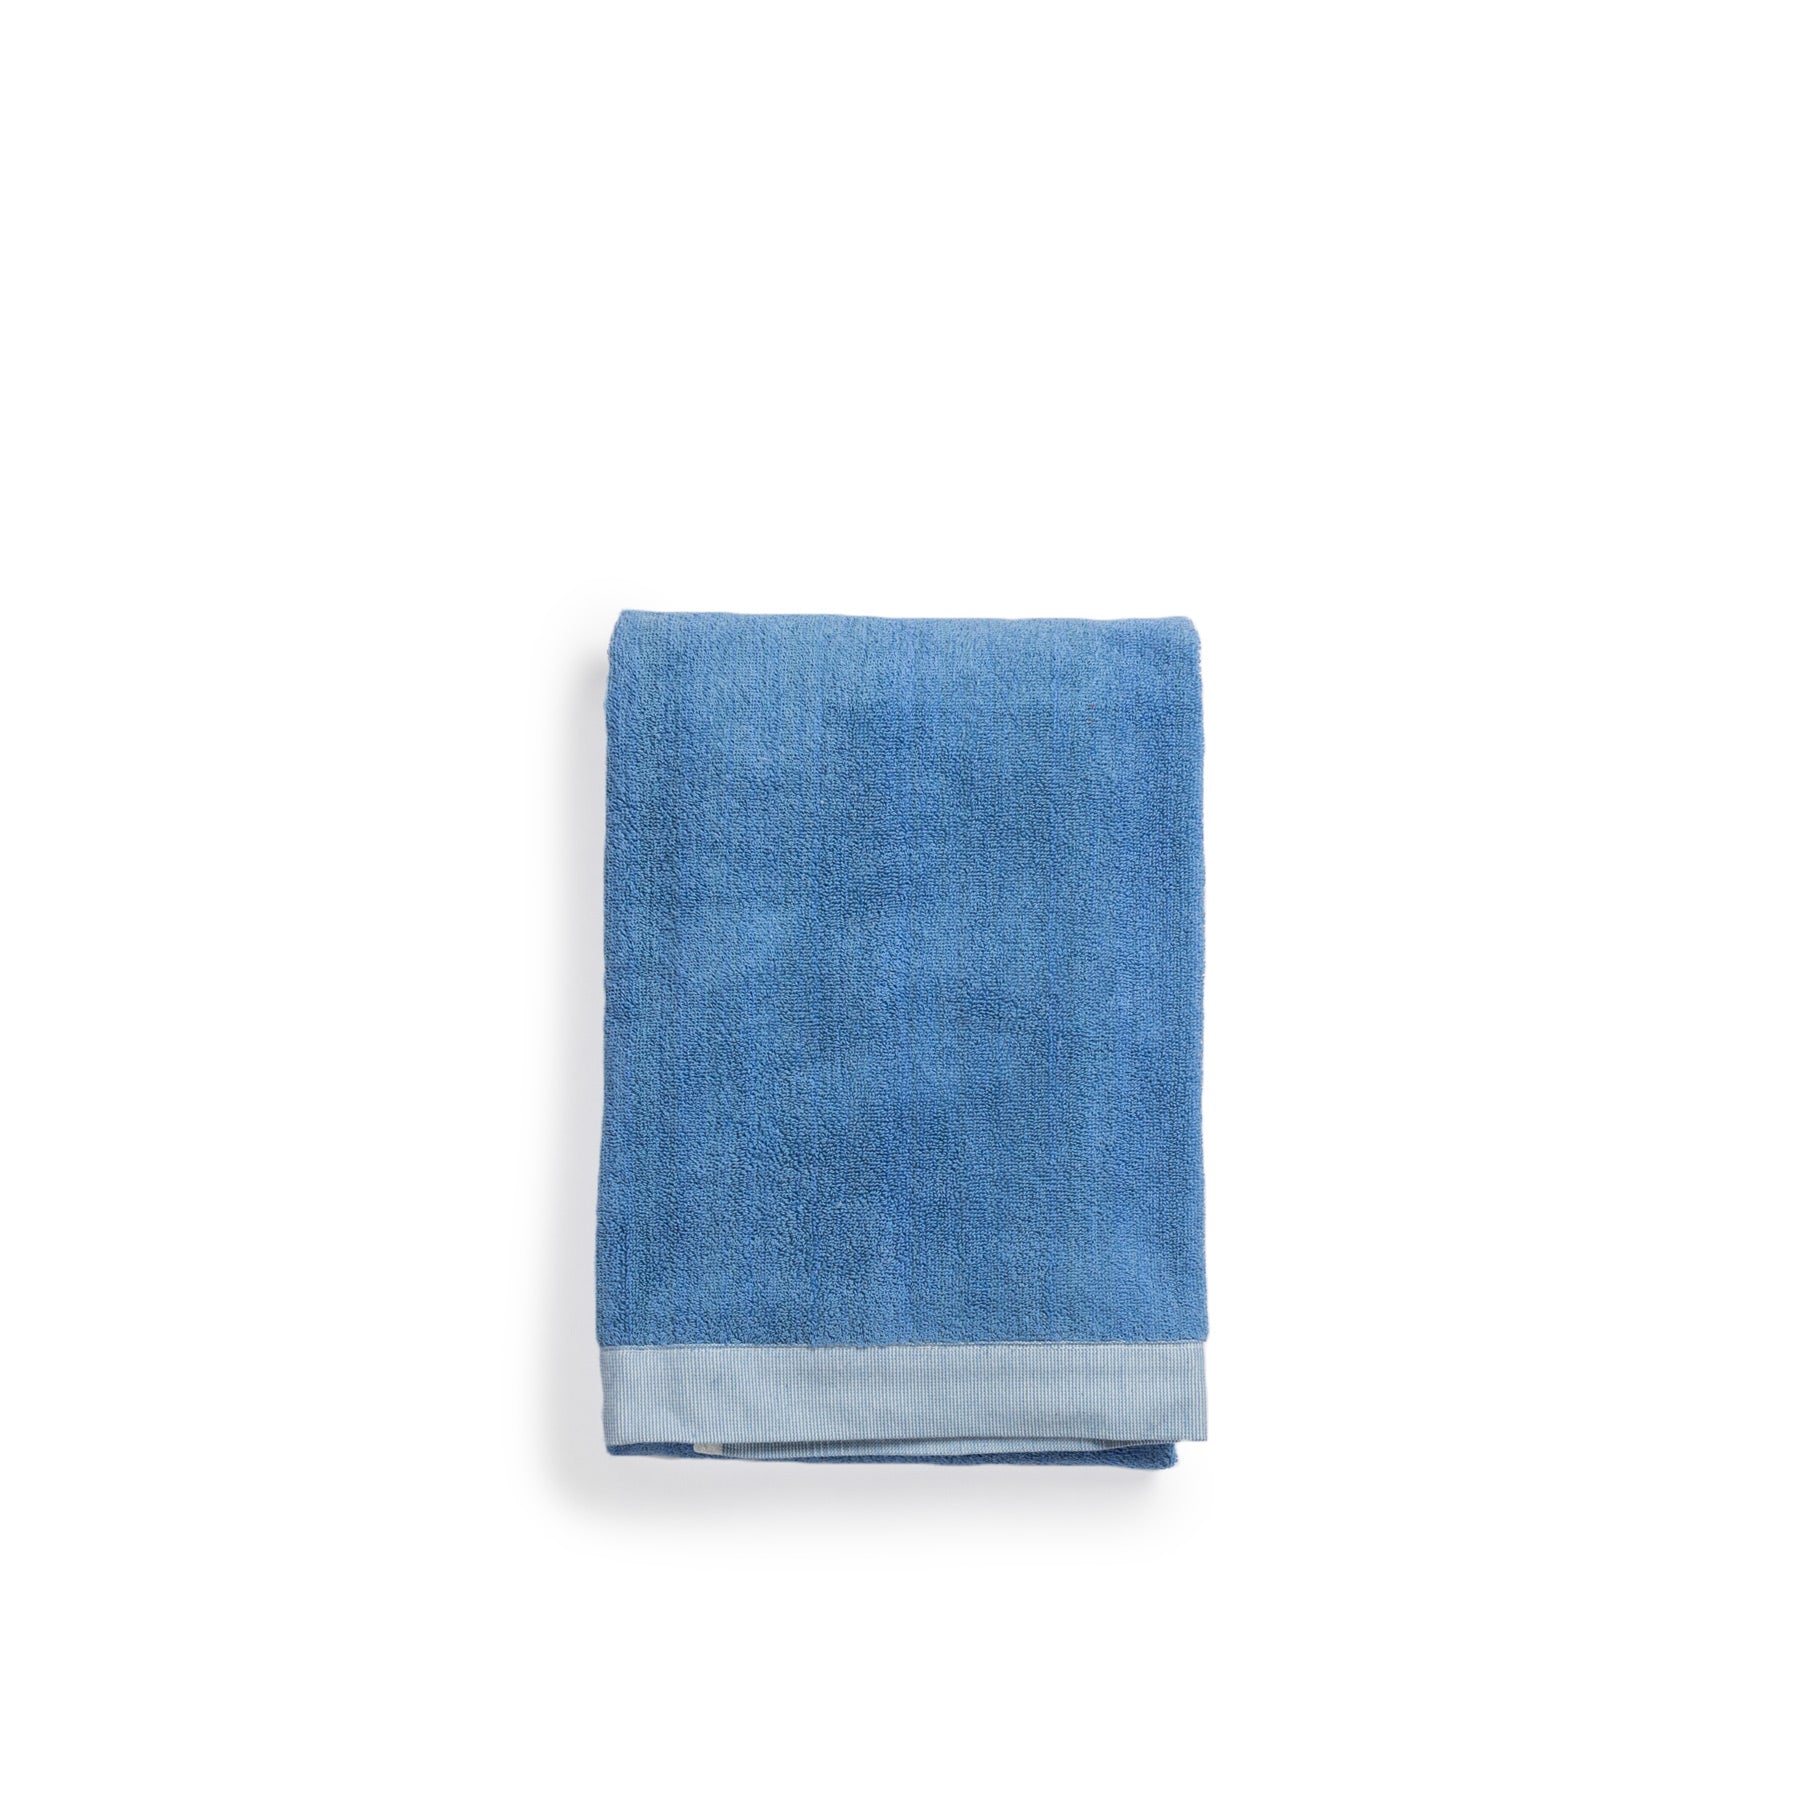 Bath Towel in Indigo Zoom Image 1